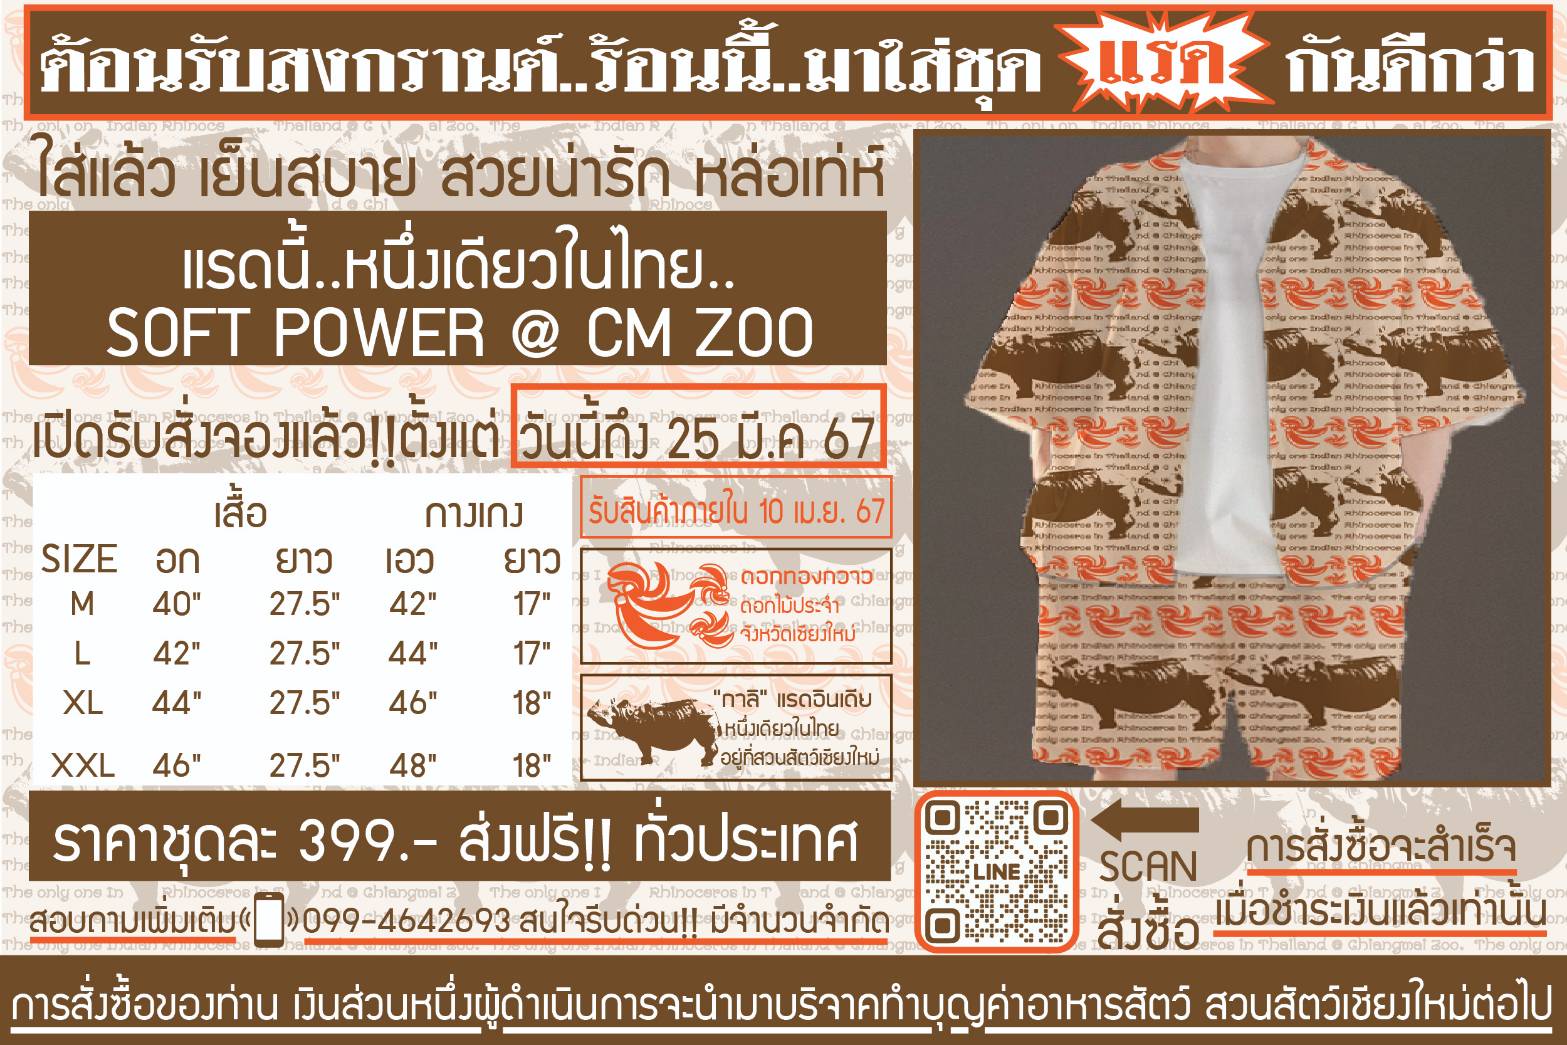 มาแล้วชุด“แรด” หนึ่งเดียวในไทย”soft power “ limited edition สวนสัตว์เชียงใหม่ ใส่ต้อนรับสงกรานต์ นี้